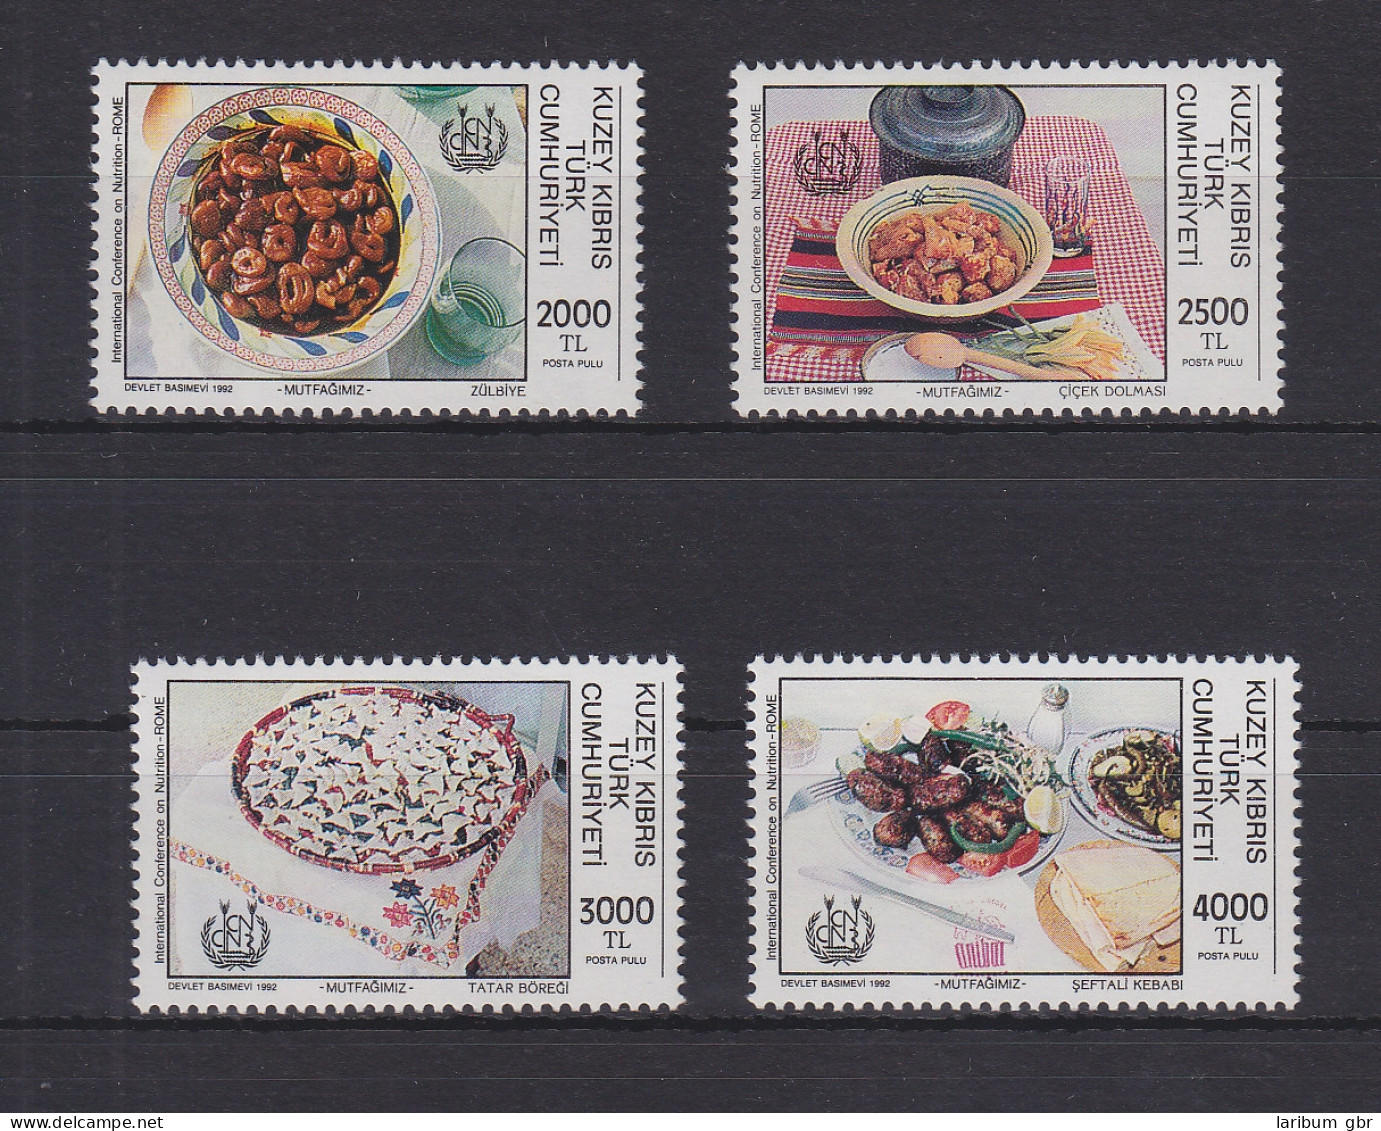 Türkisch-Zypern 347-350 Postfrisch Ernährung, Cyprus MNH #GE111 - Gebraucht